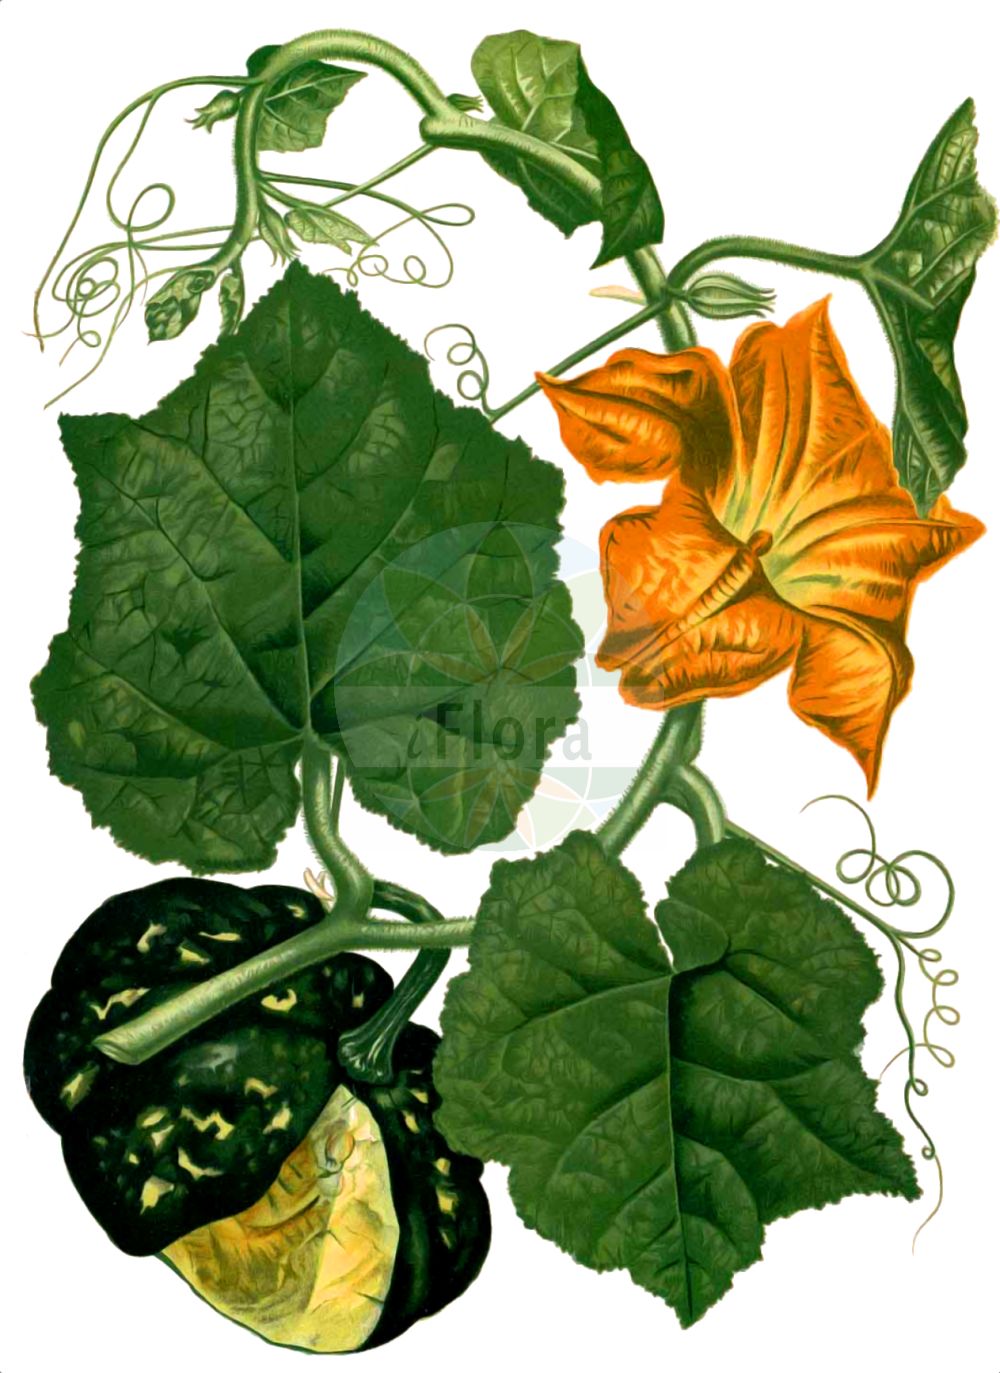 Historische Abbildung von Cucurbita maxima (Pumpkin). Das Bild zeigt Blatt, Bluete, Frucht und Same. ---- Historical Drawing of Cucurbita maxima (Pumpkin). The image is showing leaf, flower, fruit and seed.(Cucurbita maxima,Pumpkin,Cucurbita maxima,Cucurbita pileiformis,Cucurbita turbaniformis,Cucurbita,Cucurbitaceae,Kürbisgewächse,Cucurbit family,Blatt,Bluete,Frucht,Same,leaf,flower,fruit,seed,Blanco (1875))